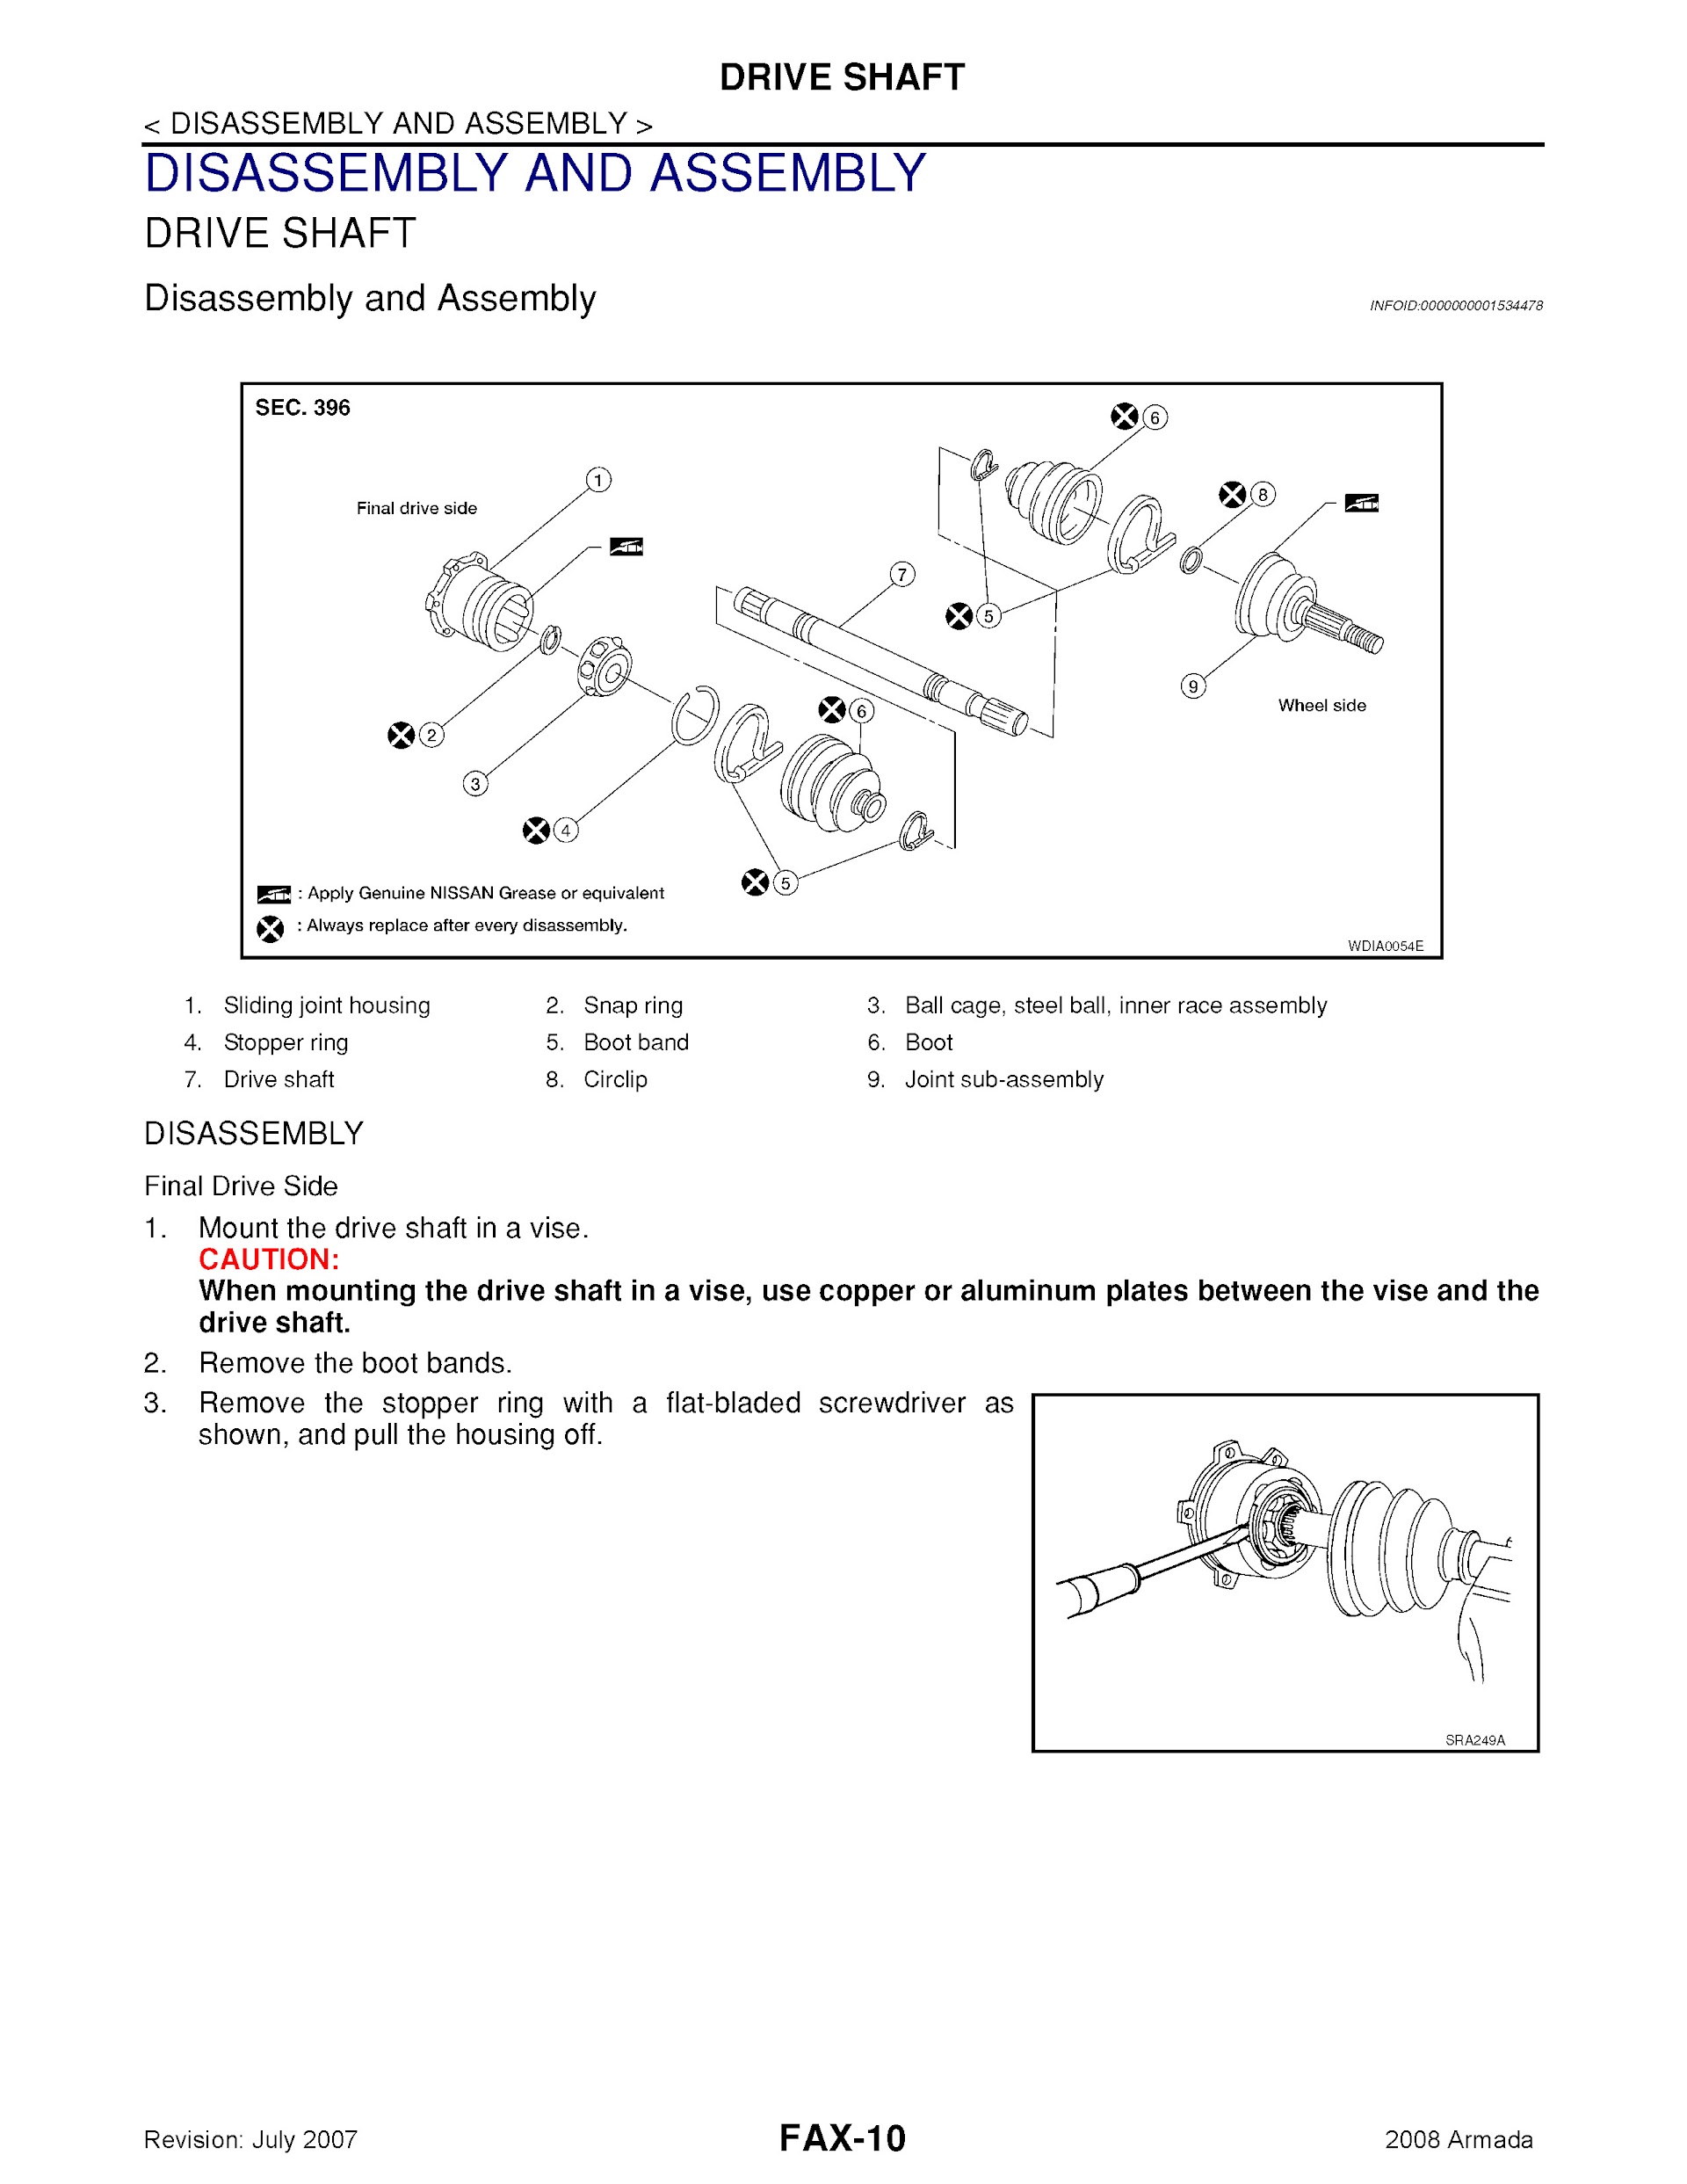 2008 Nissan Armada Repair Manual, Drive Shaft